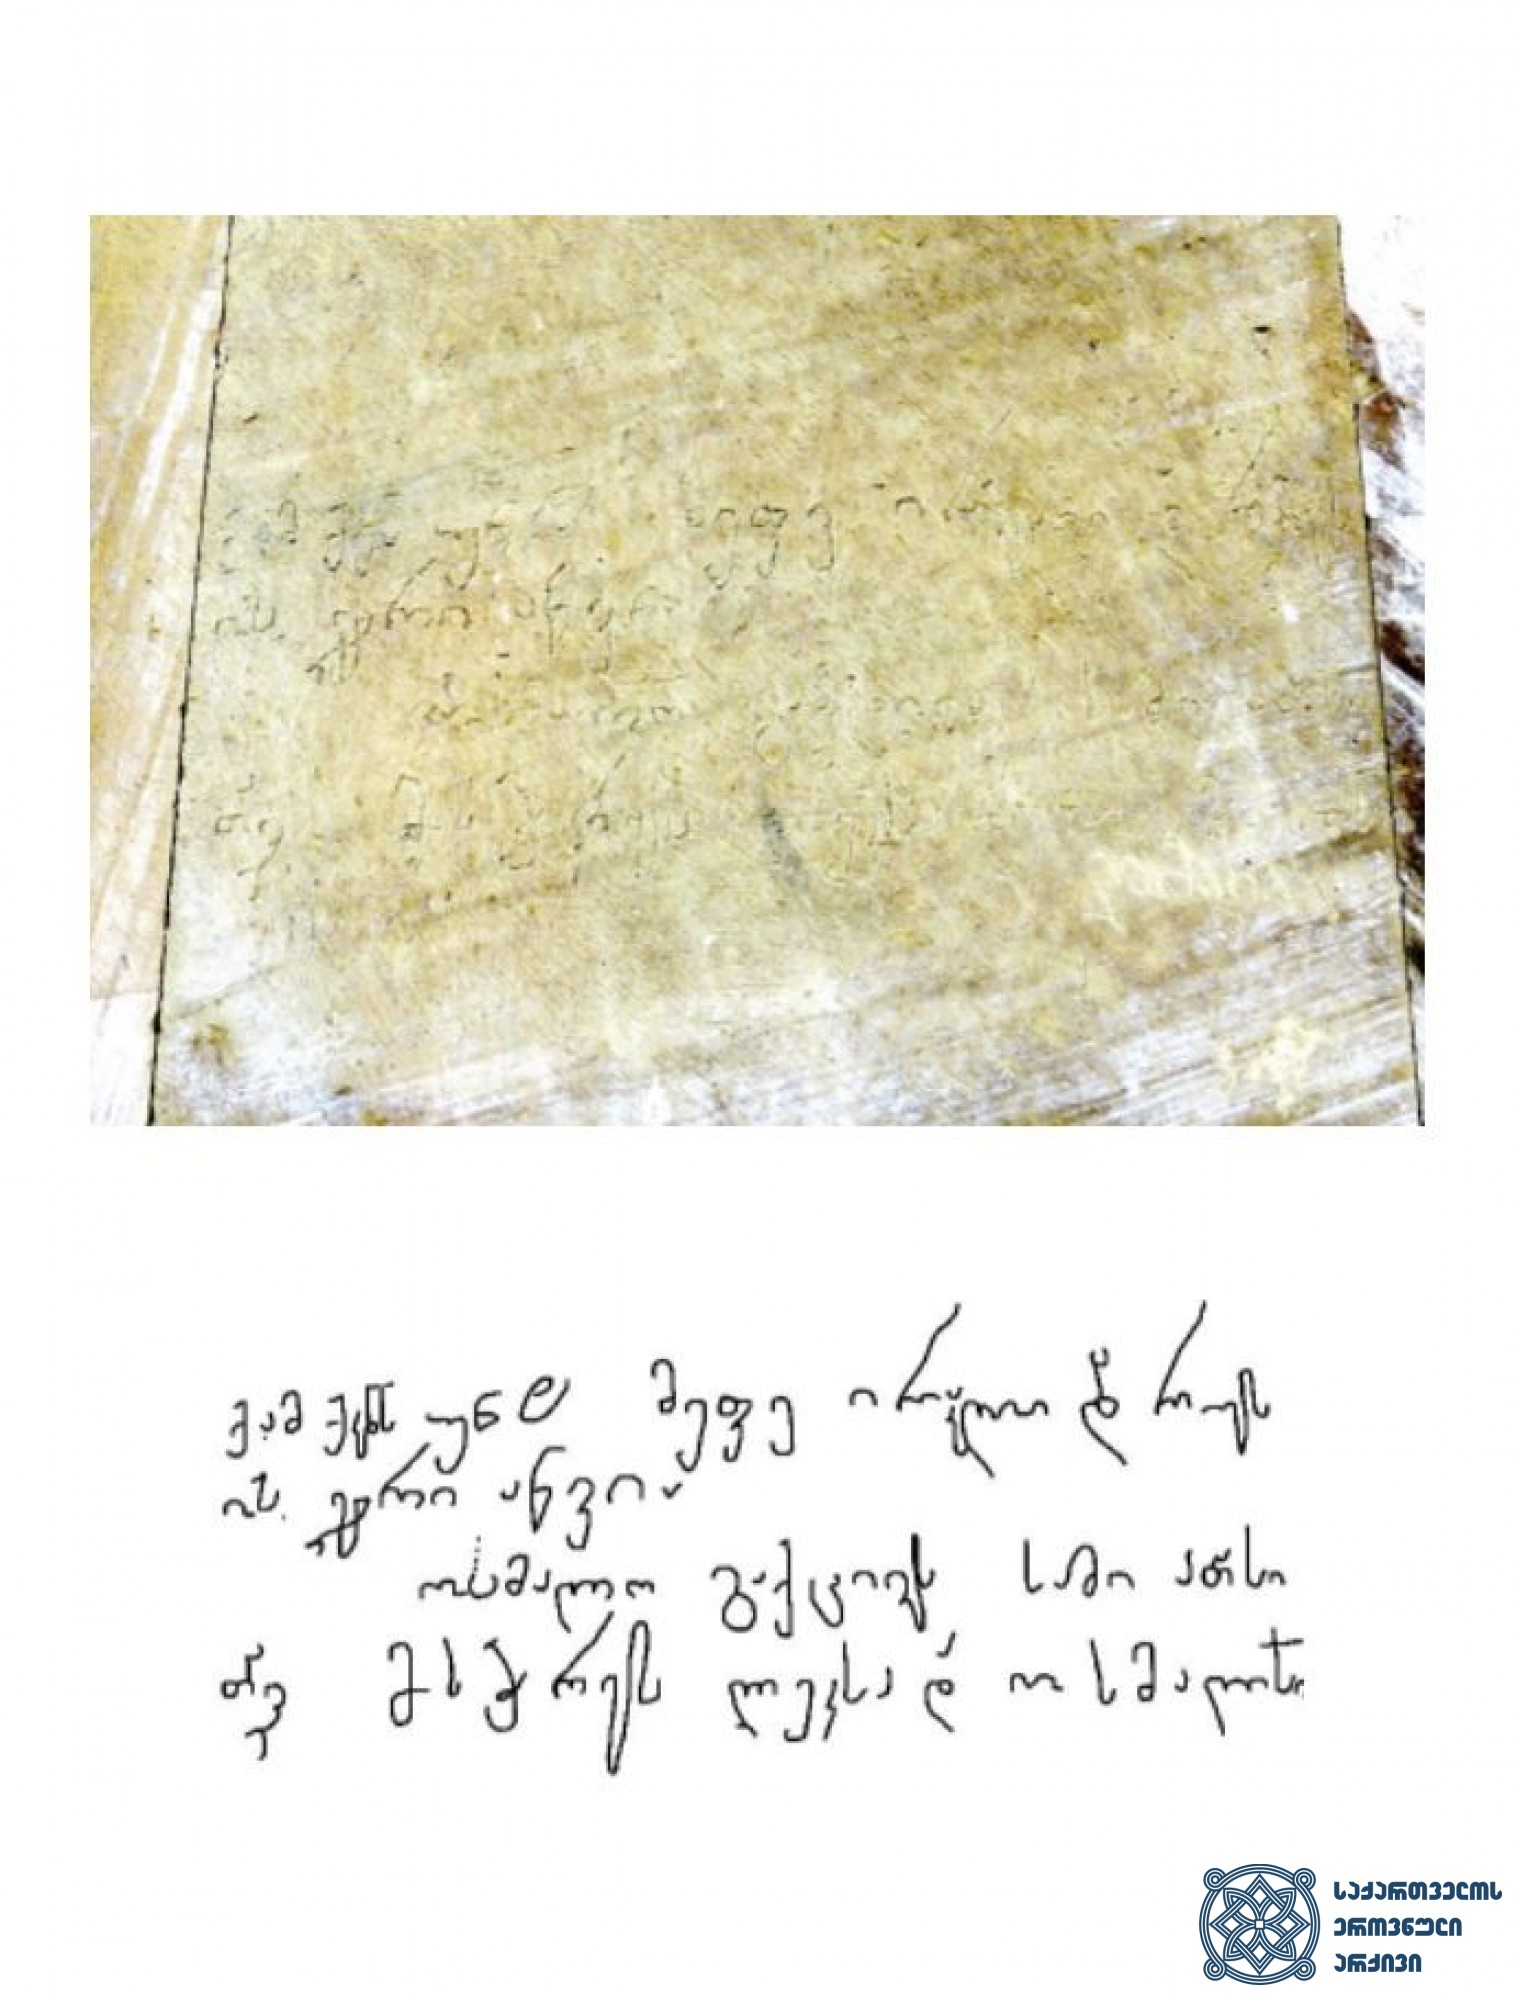 ასპინძის ბრძოლის წარწერა, 1770 წელი. <br>
წარწერა ერთაწმინდის ტაძრის ჩრდილოეთ კედელზე:<br>
„ქ. ამ ქ(ორონი)კ(ო)ნს უნჱ მეფე ირაკლი და რუსის ჯარი აწვია, აწვია ოსმალო გა(ა)ქცივ(ე)ს, სამი ათასი თავი მოსჭრეს ლუკ(ი)სა და ოსმალ(ო)სი“.